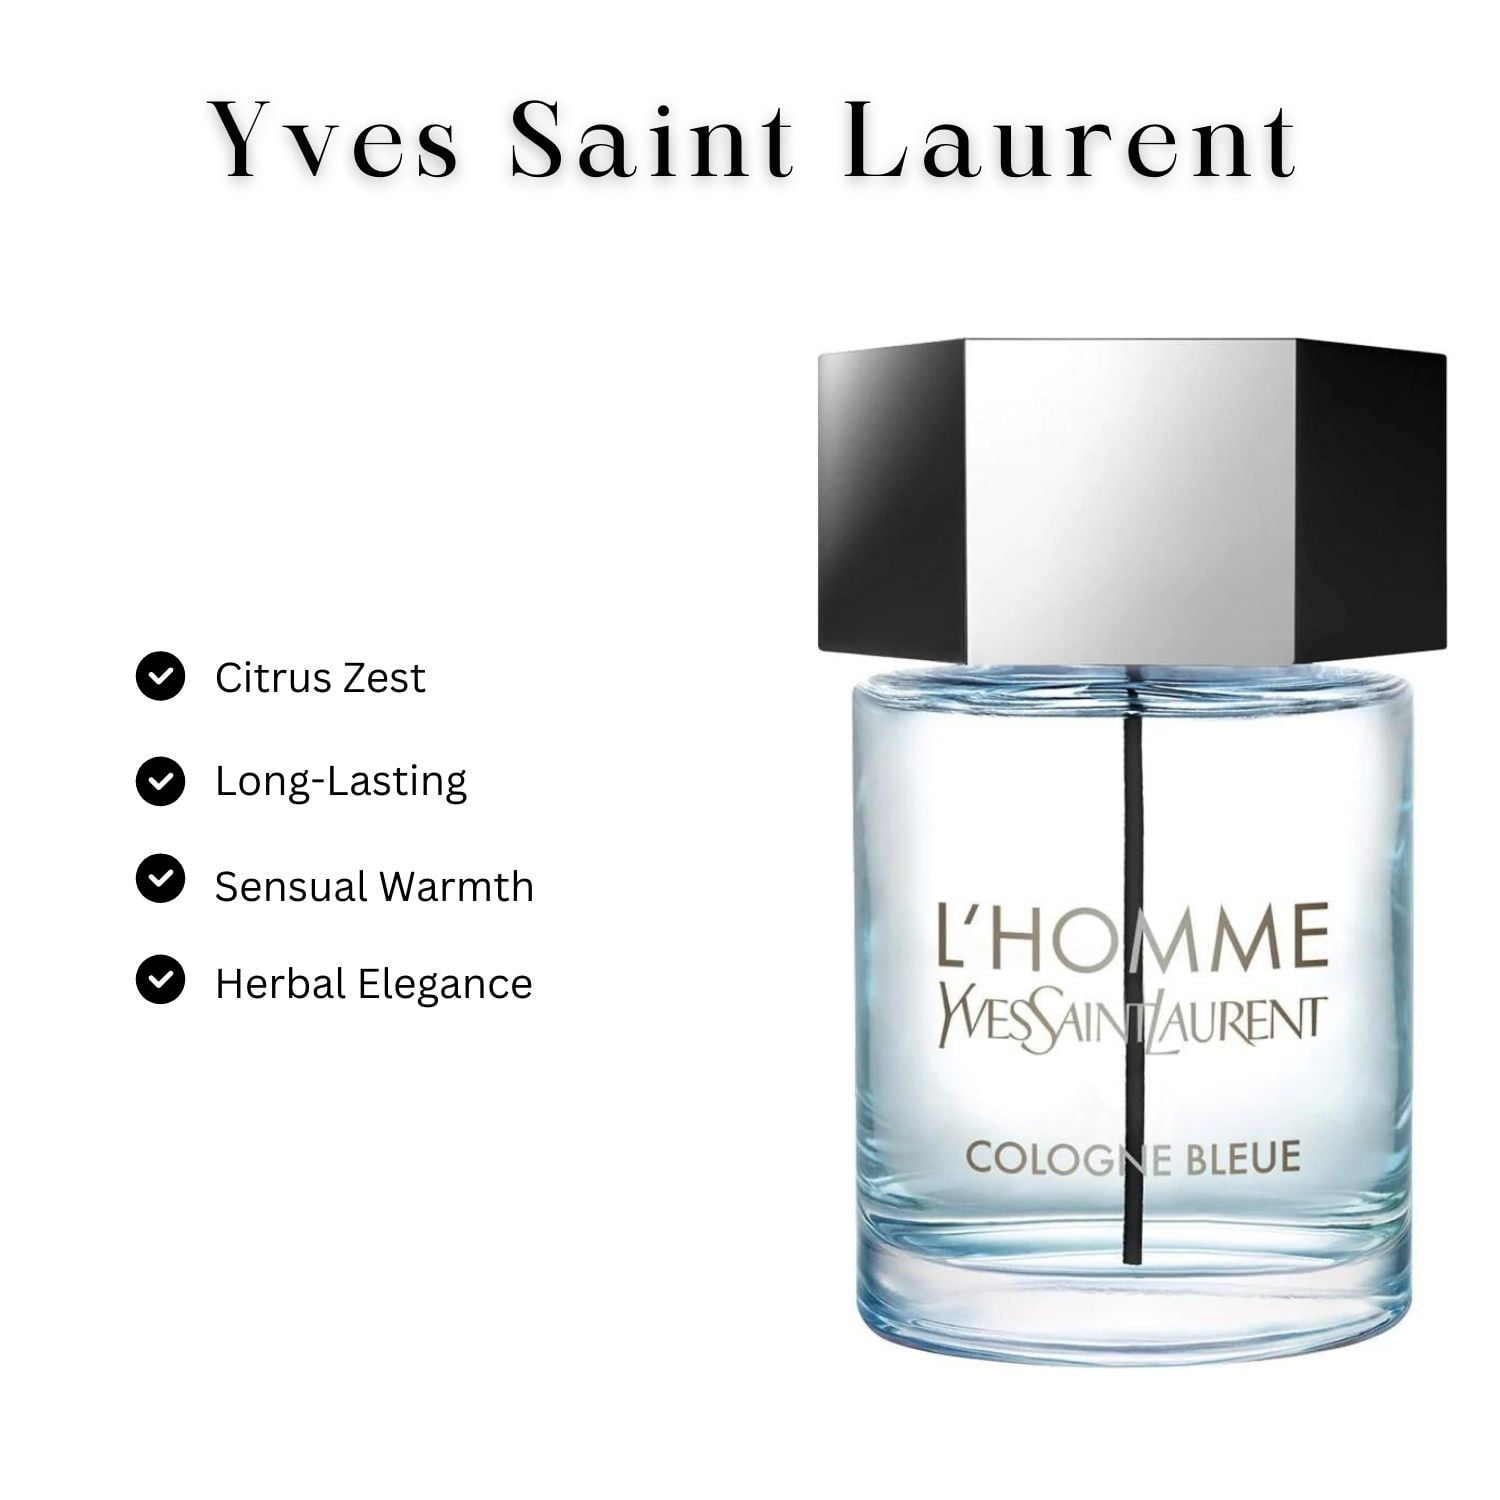 Yves Saint Laurent L'Homme Cologne Bleue Eau De Toilette Vaporisateur  Spray, 3.4 oz 